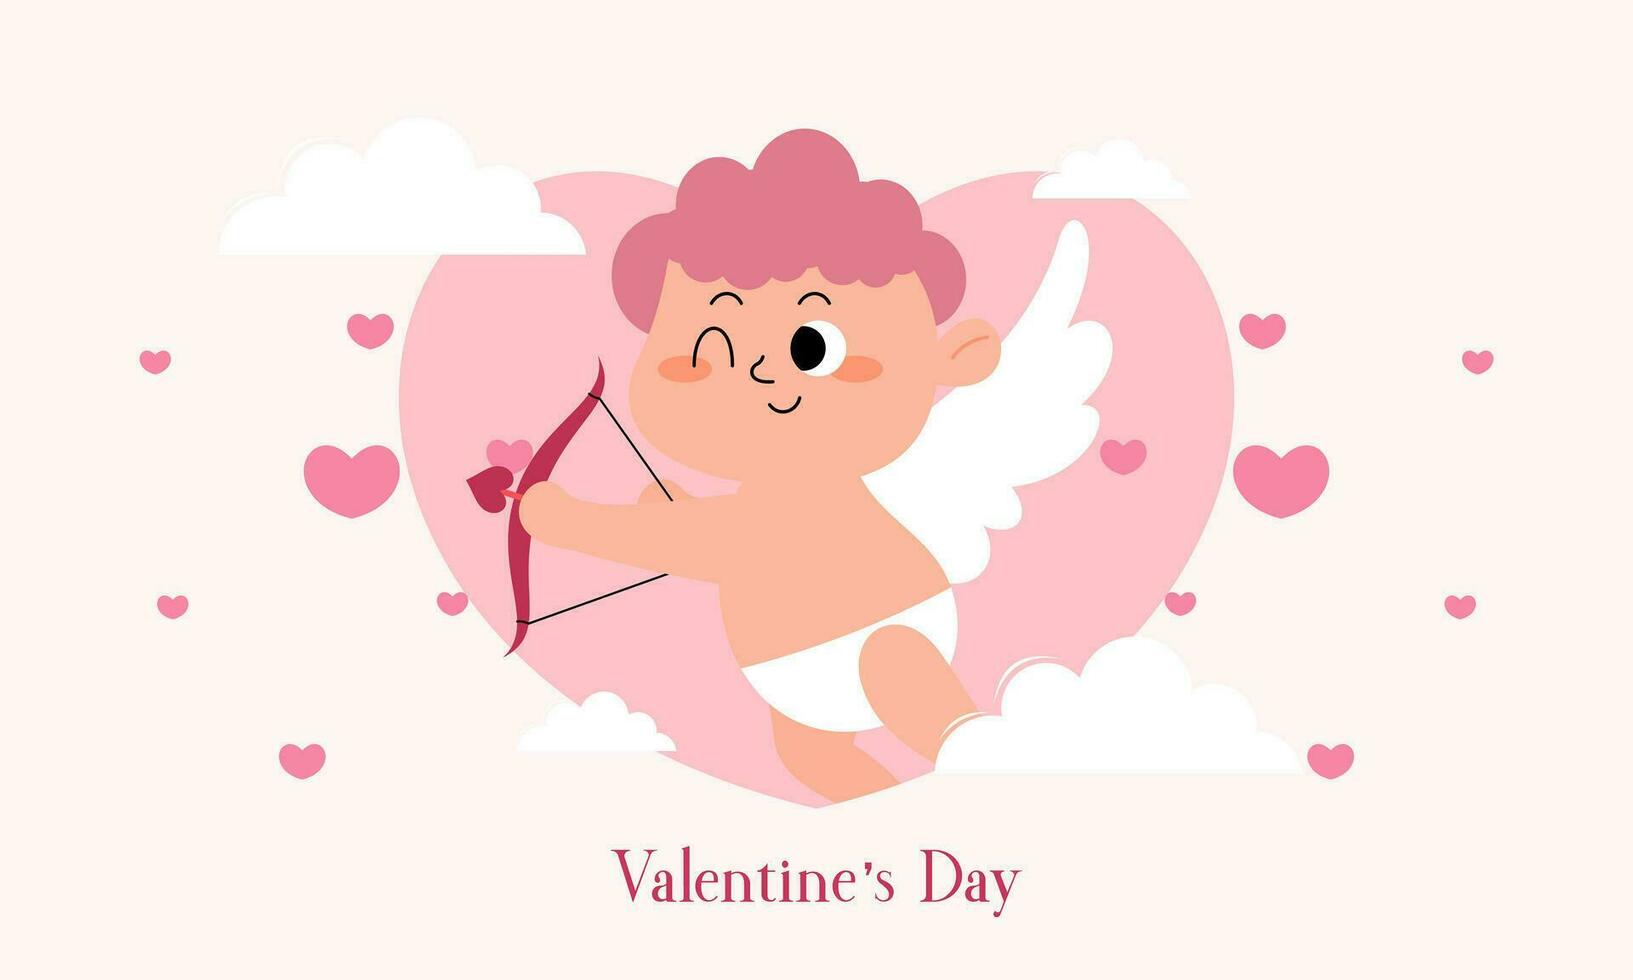 Valentinstag Tag Illustration mit süß Amor isoliert auf das Himmel Wolken Hintergrund vektor